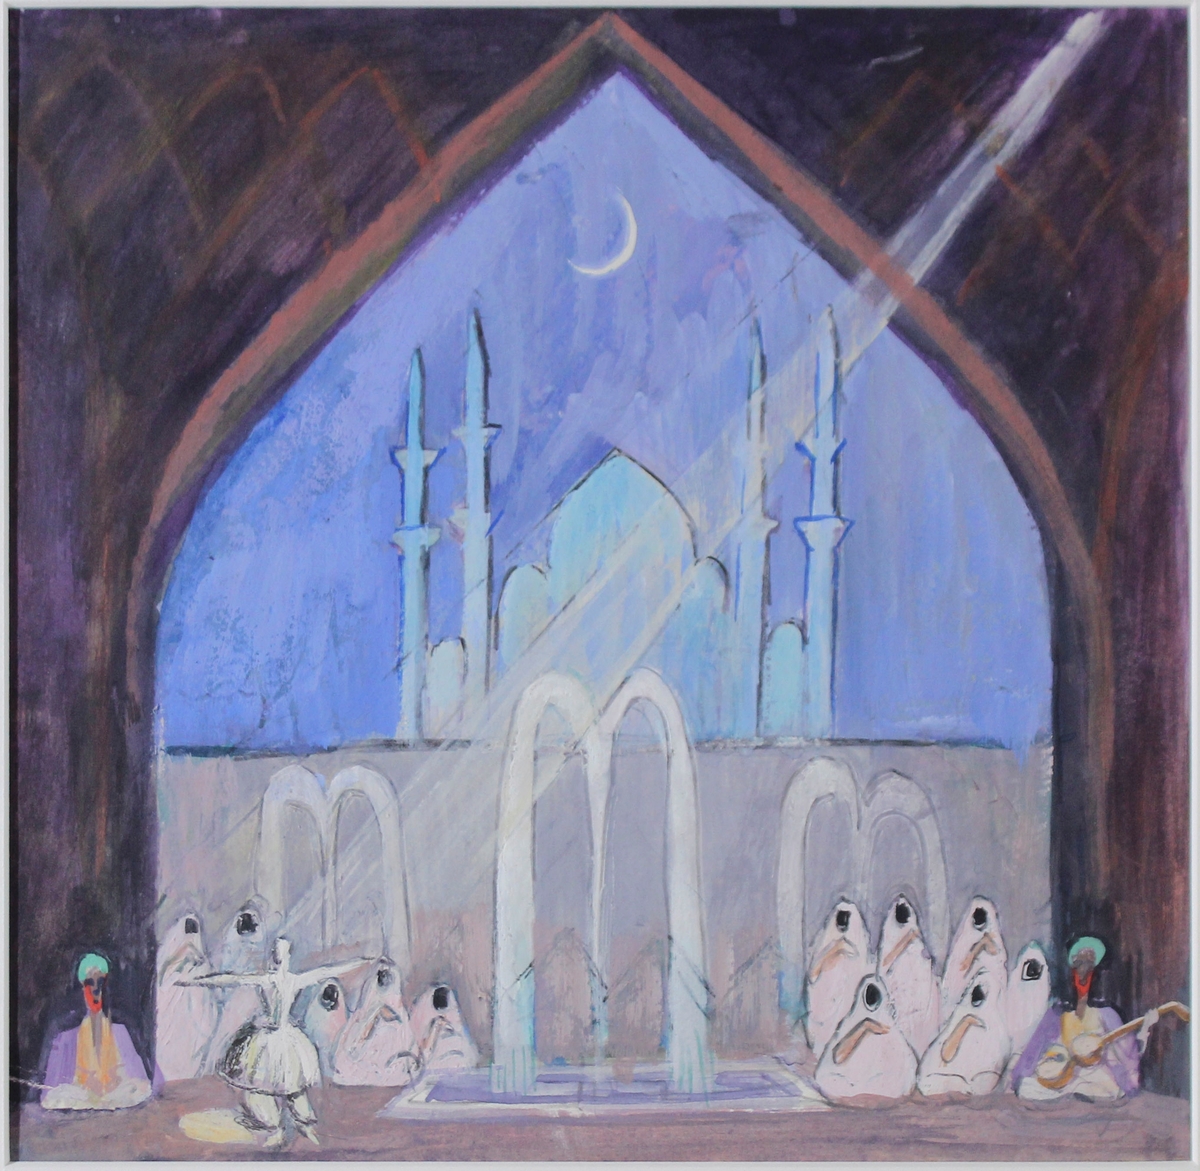 Kan vara skiss till ett sceneri för en teaterscen, formen på kulissen och ljuset från strålkastaren påminner om Grosvalds skildringar av basarer och hamam. Personen till vänster dansar en dans karaktäristisk för sufismen.